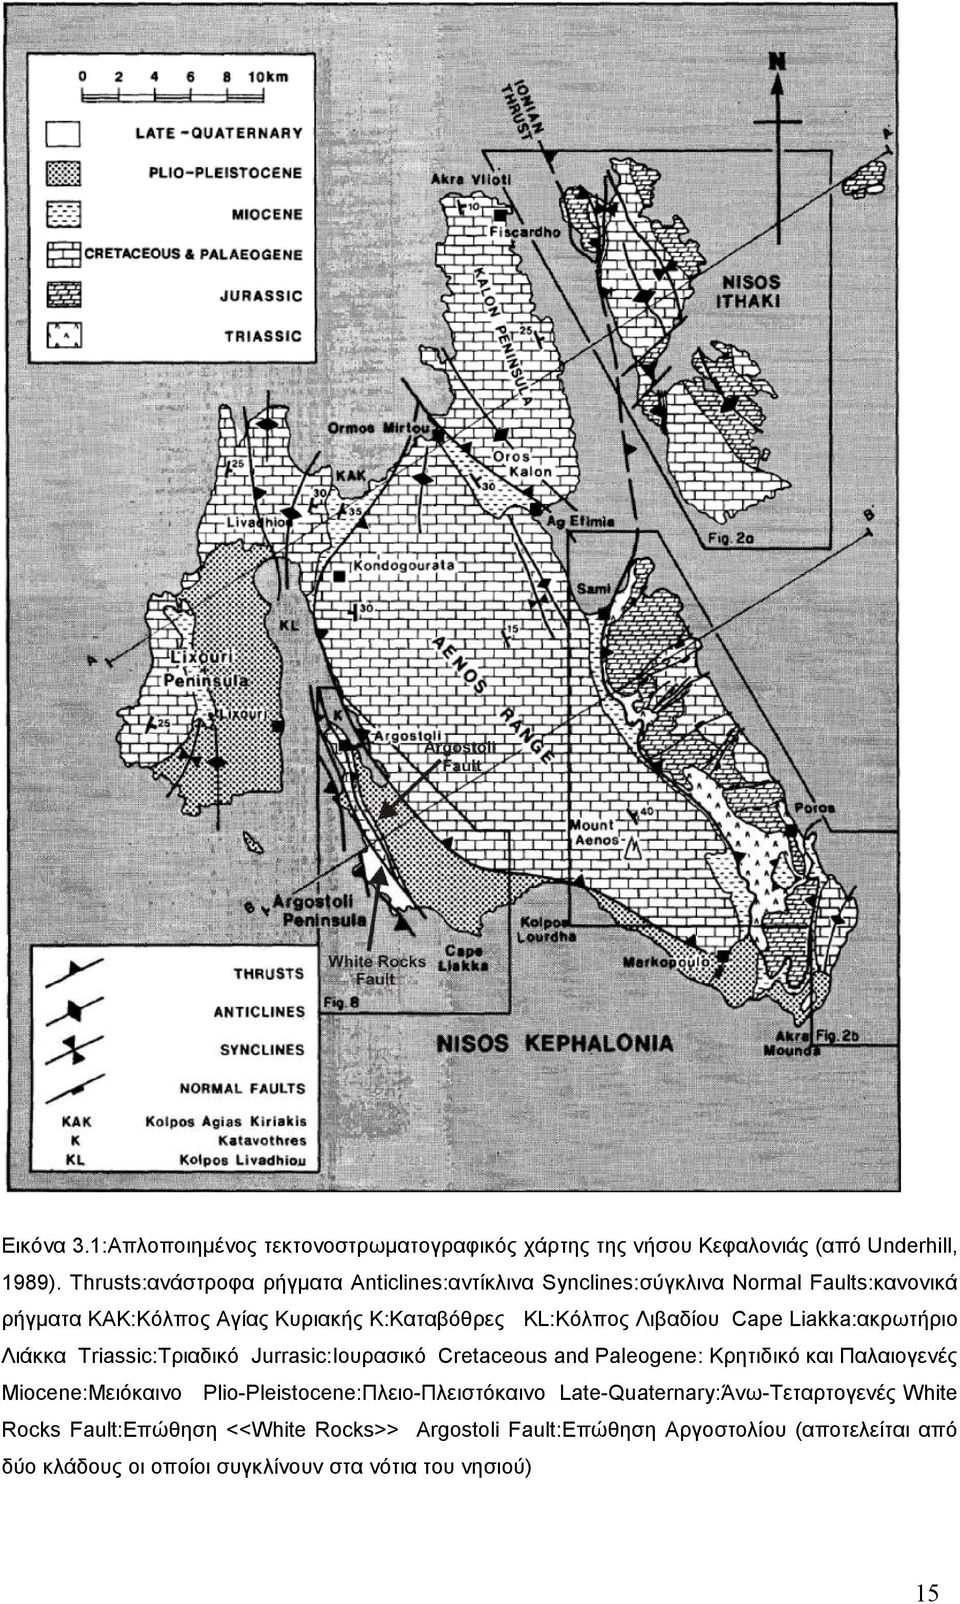 Λιβαδίου Cape Liakka:ακρωτήριο Λιάκκα Triassic:Τριαδικό Jurrasic:Ιουρασικό Cretaceous and Paleogene: Κρητιδικό και Παλαιογενές Miocene:Μειόκαινο